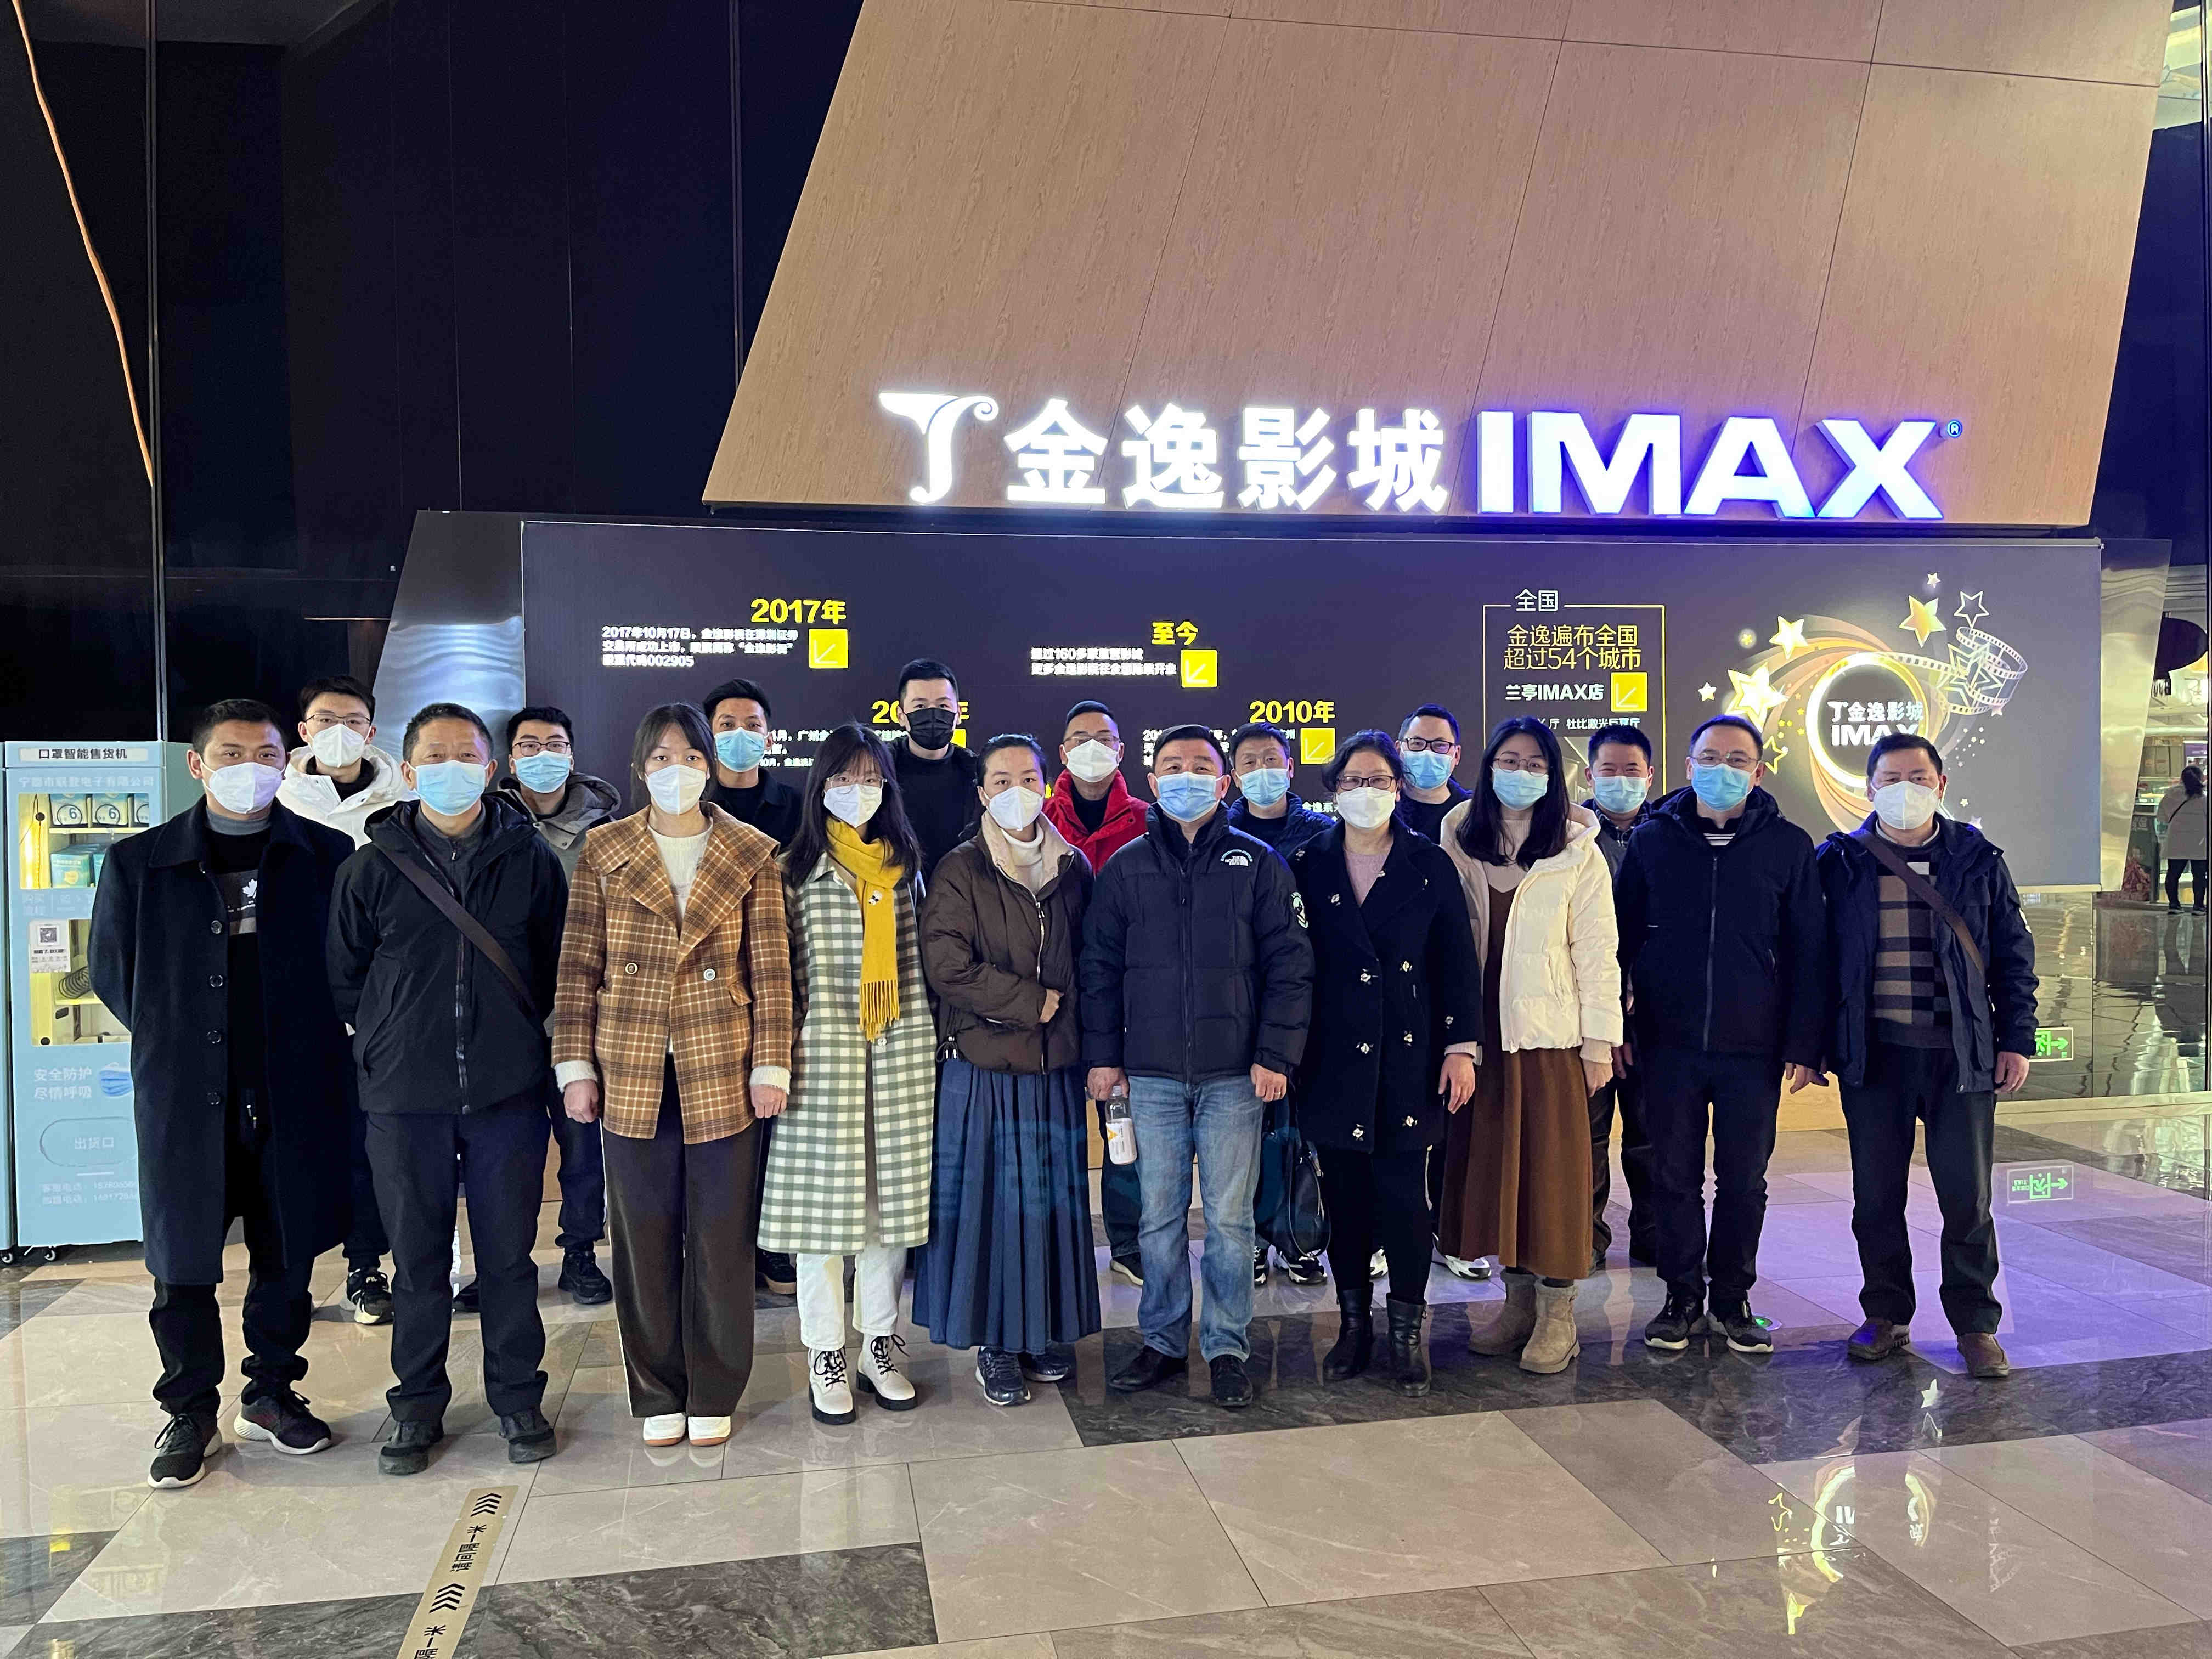 重庆空管分局技术保障部机关联合工会小组组织观看电影《满江红》